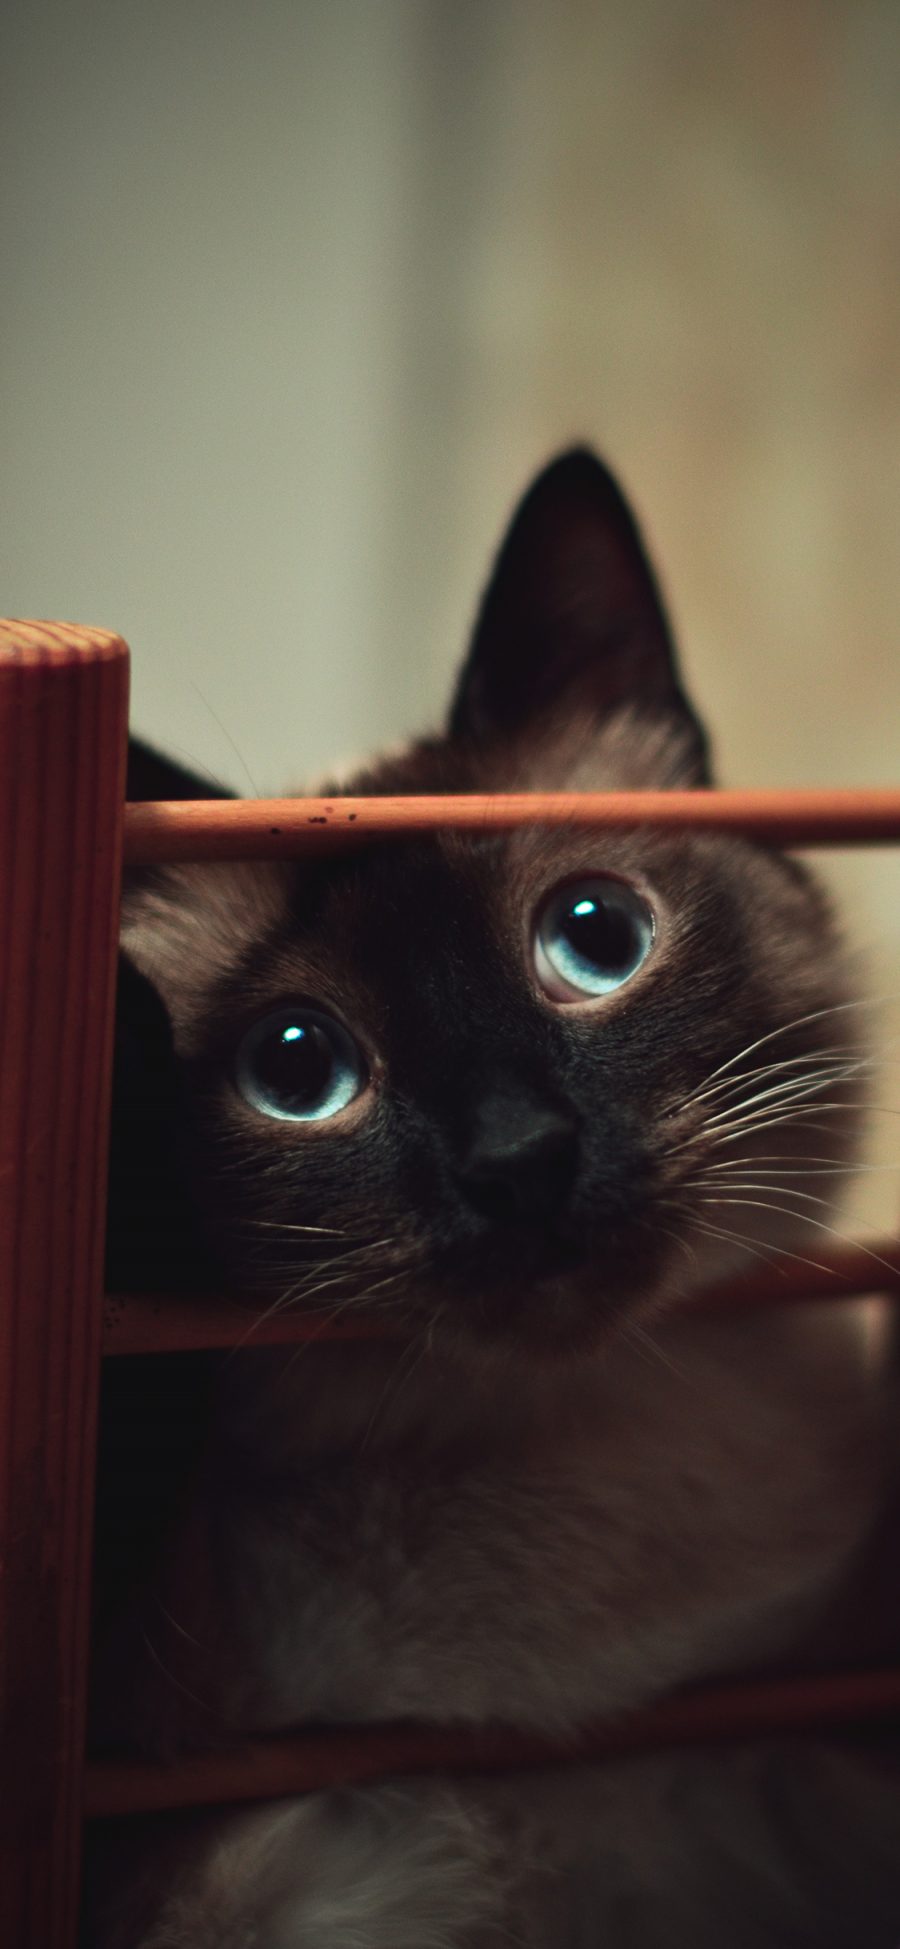 [2436×1125]暹罗猫 宠物猫 大眼睛 萌 苹果手机壁纸图片